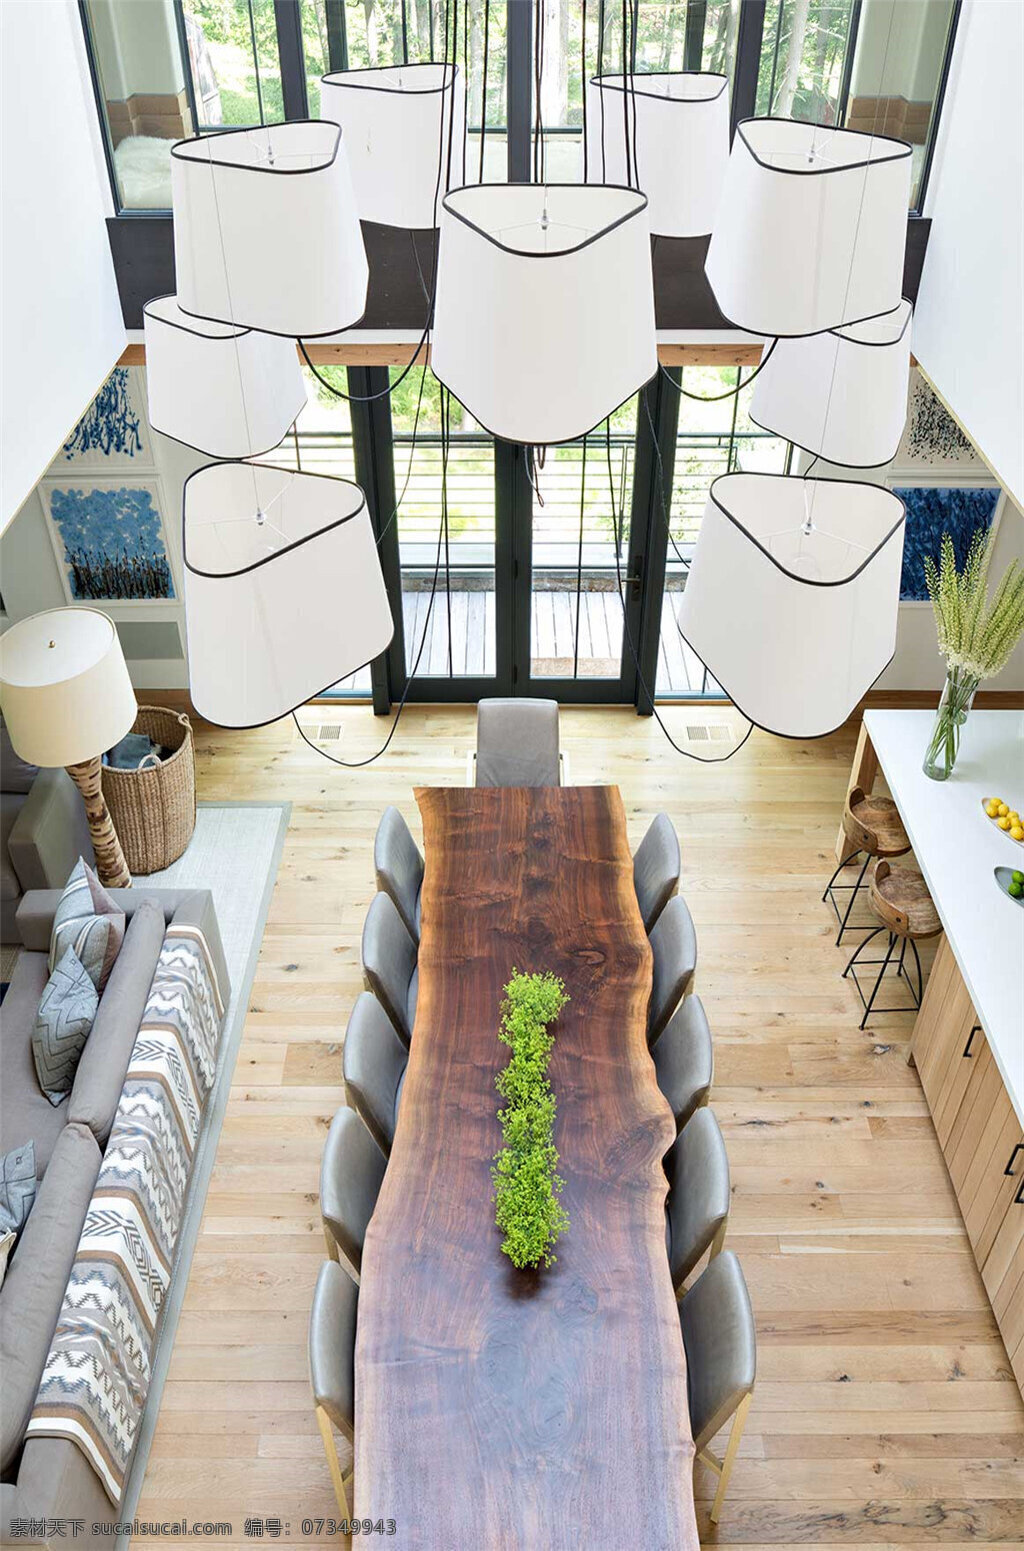 个性 创意 吊灯 效果图 抱枕 长方形 木质 餐桌 环境设计 家居装潢 空间设计 绿色植物 沙发 设计效果图 室内设计 室内效果图 装修效果图